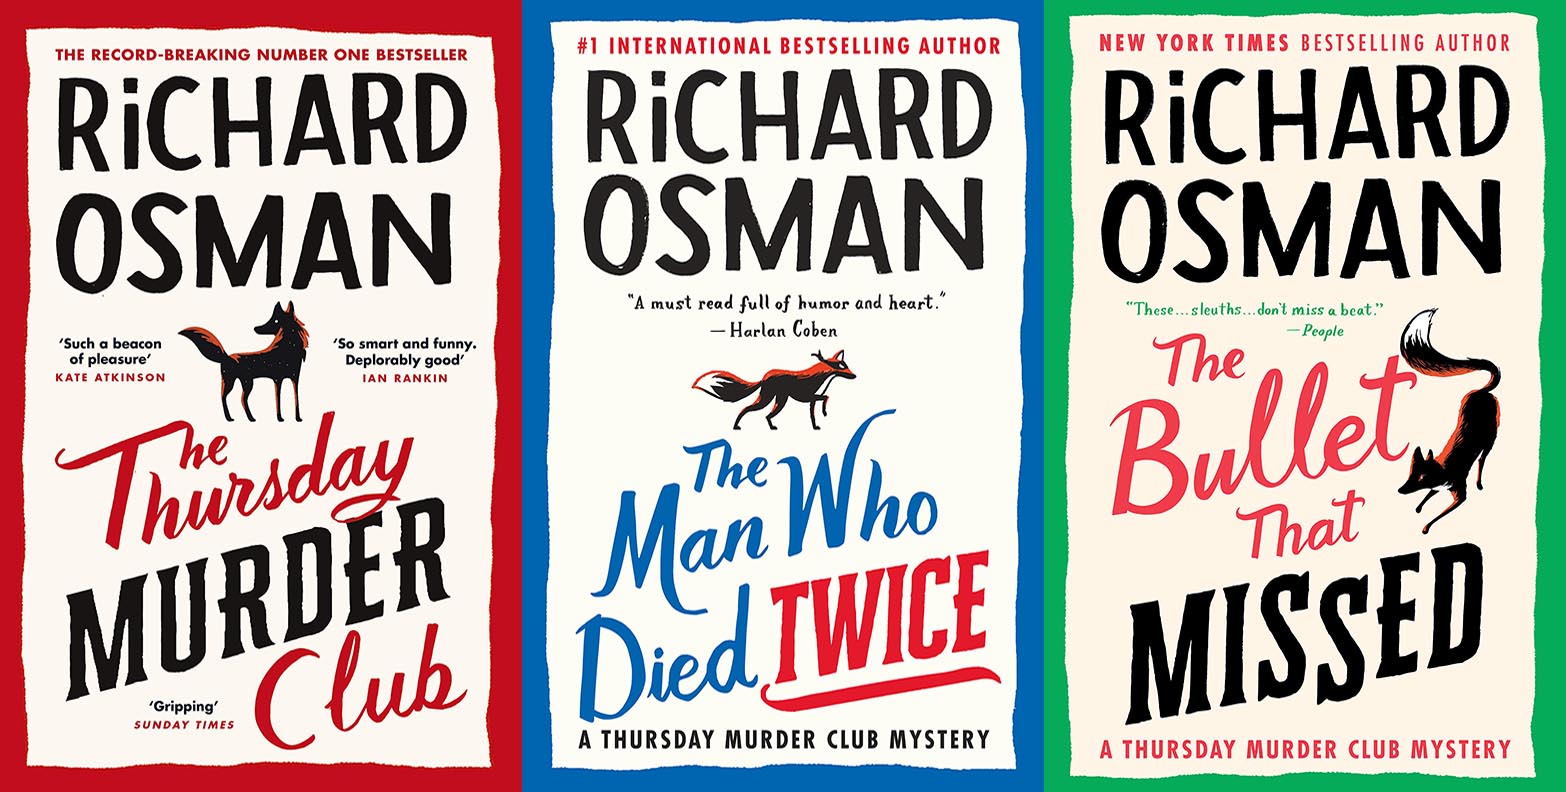 Richard Osman Books in Order Guide 11 Books]